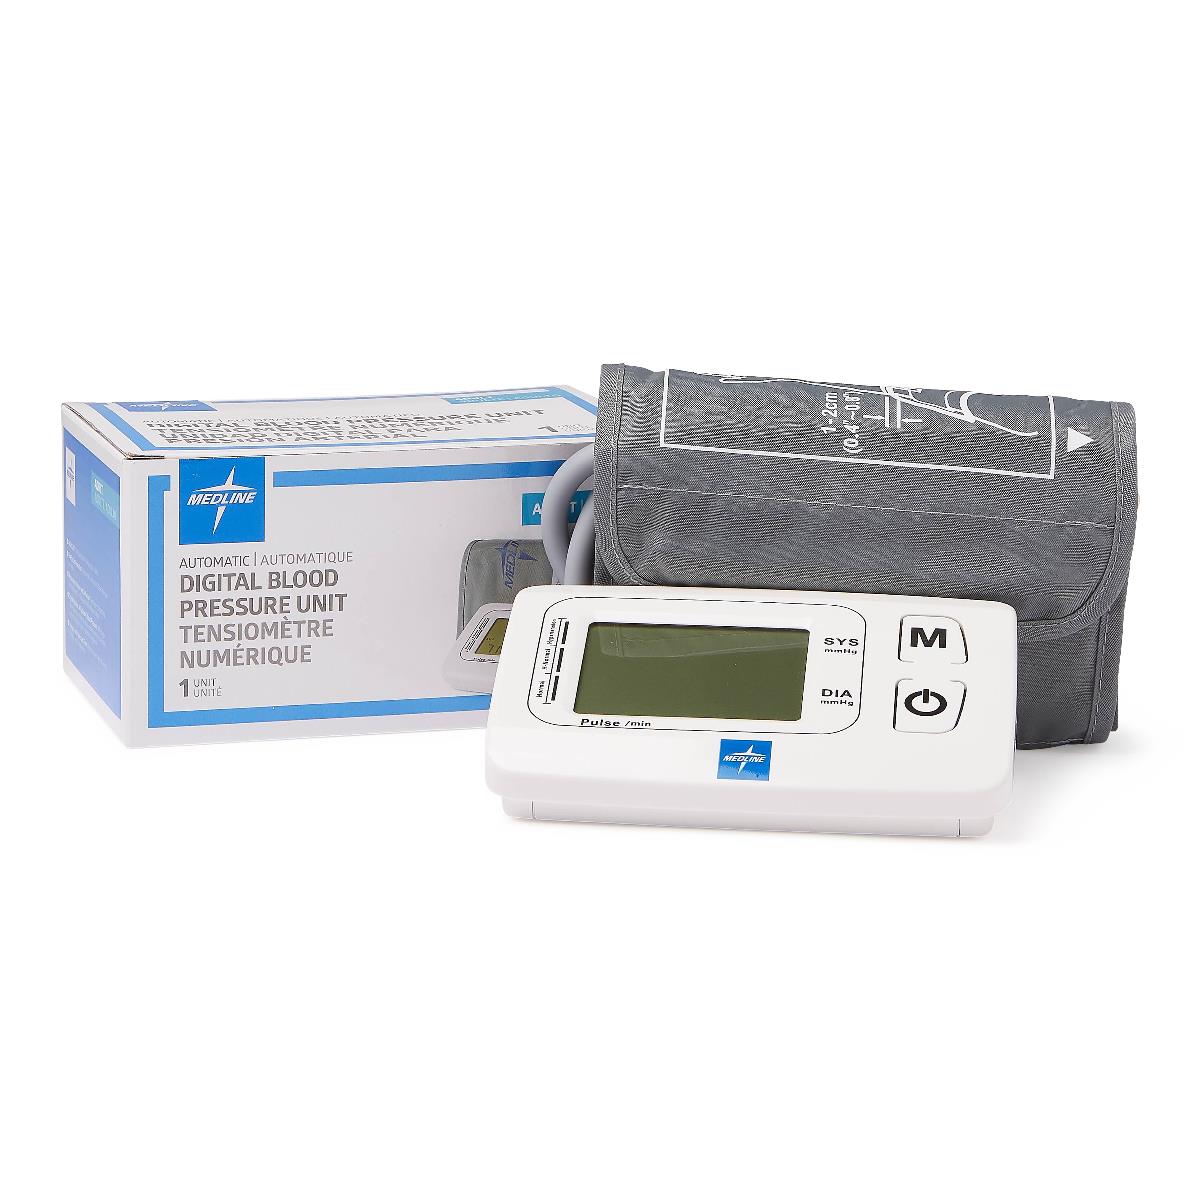 Riester Ri-Champion smartPRO+ Blood Pressure Device +W-cuff